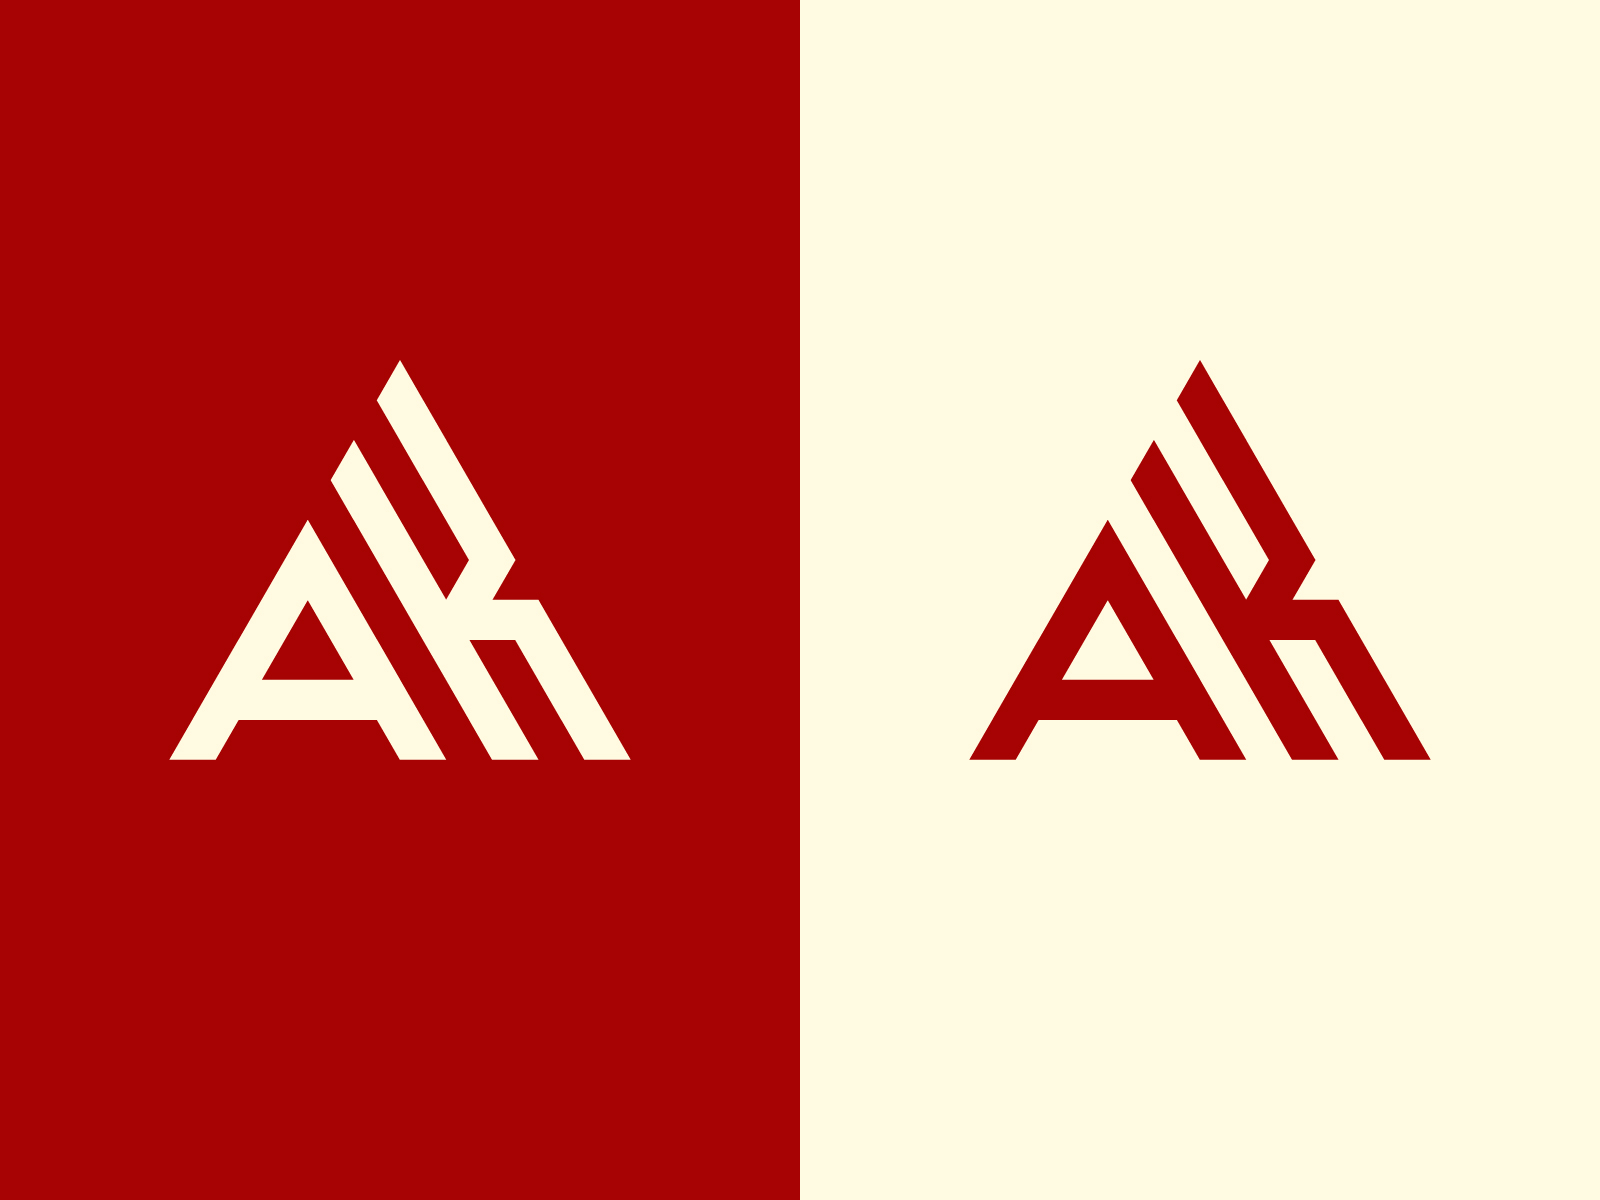 AK logo. AK creative latter logo icon design Stock Vector | Adobe Stock